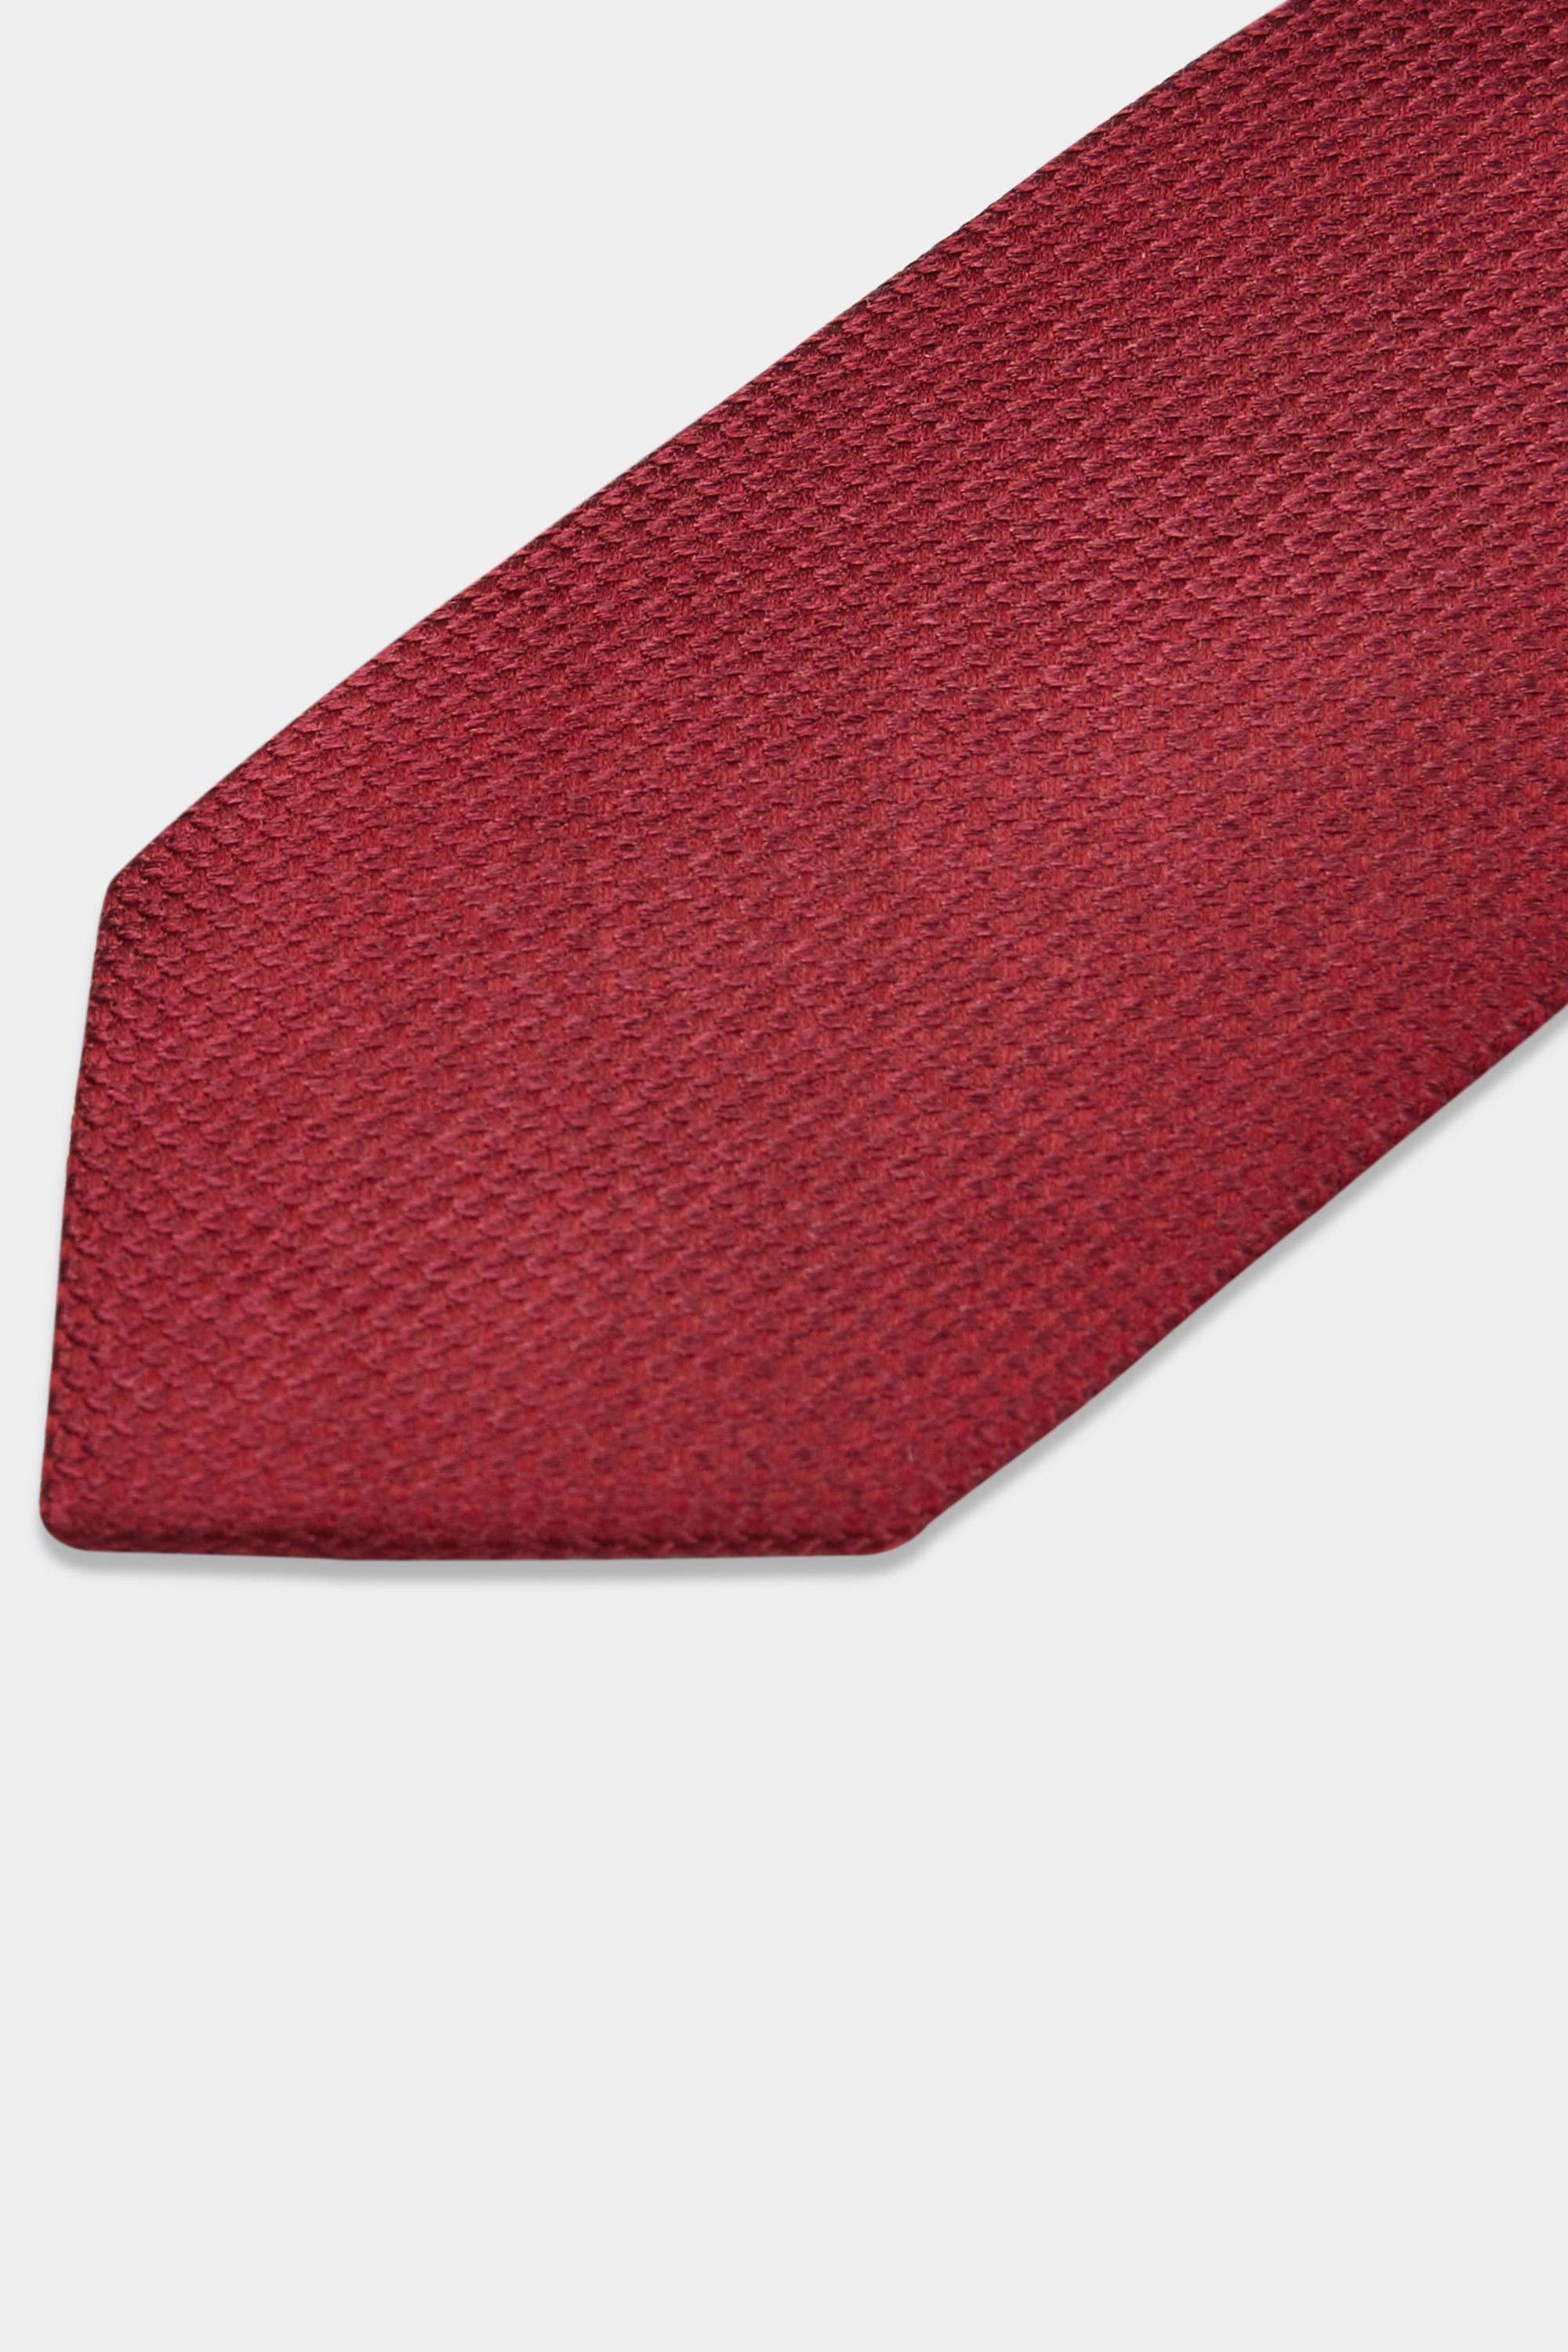 Moss Bros Burgundy Semi-textured Silk Tie for Men - Lyst